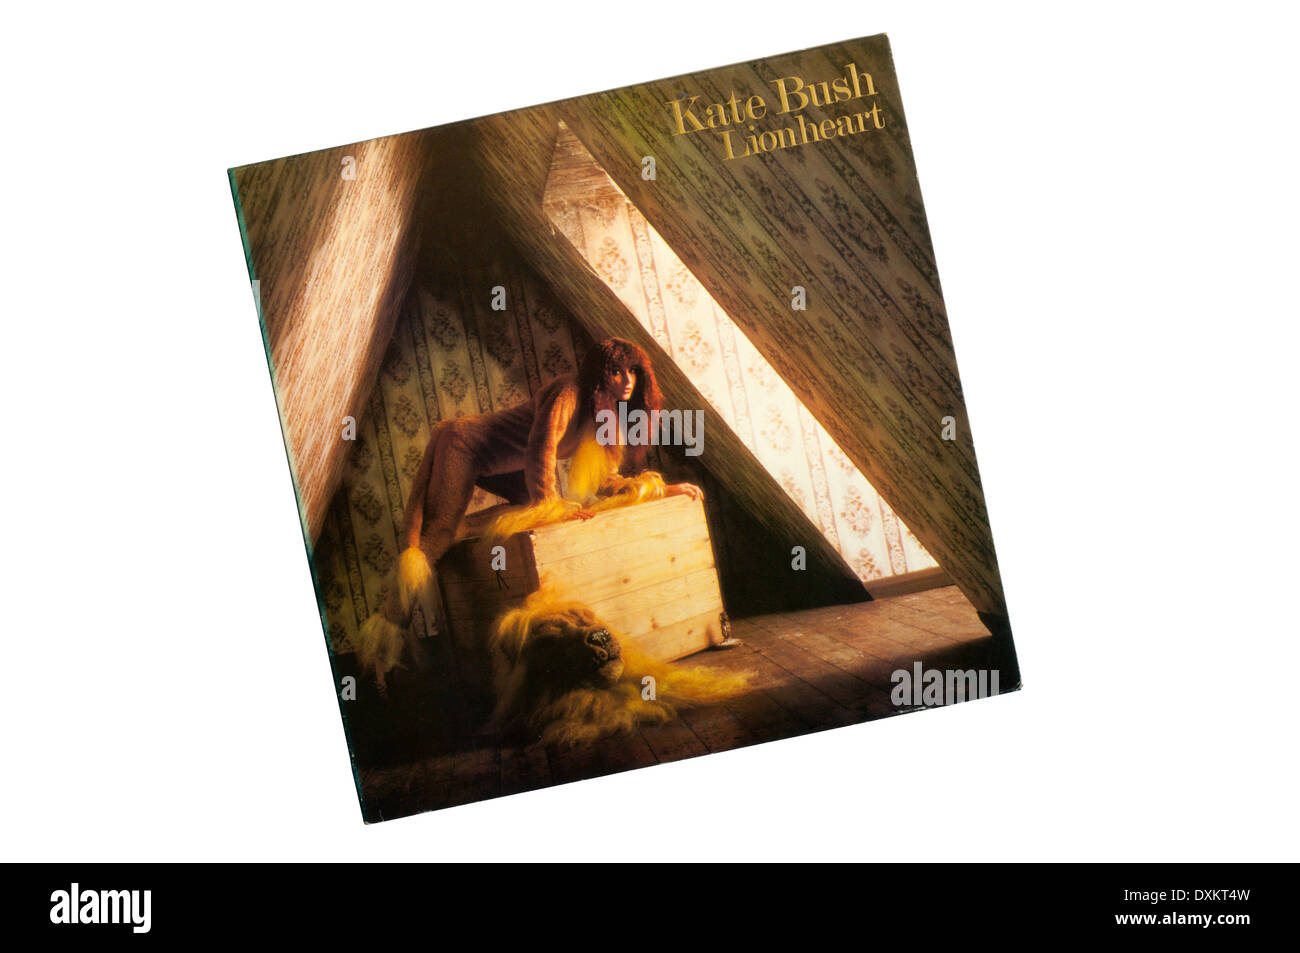 Cuor di leone è stato il secondo album per il cantante inglese Kate Bush. È stato rilasciato nel 1978. Foto Stock